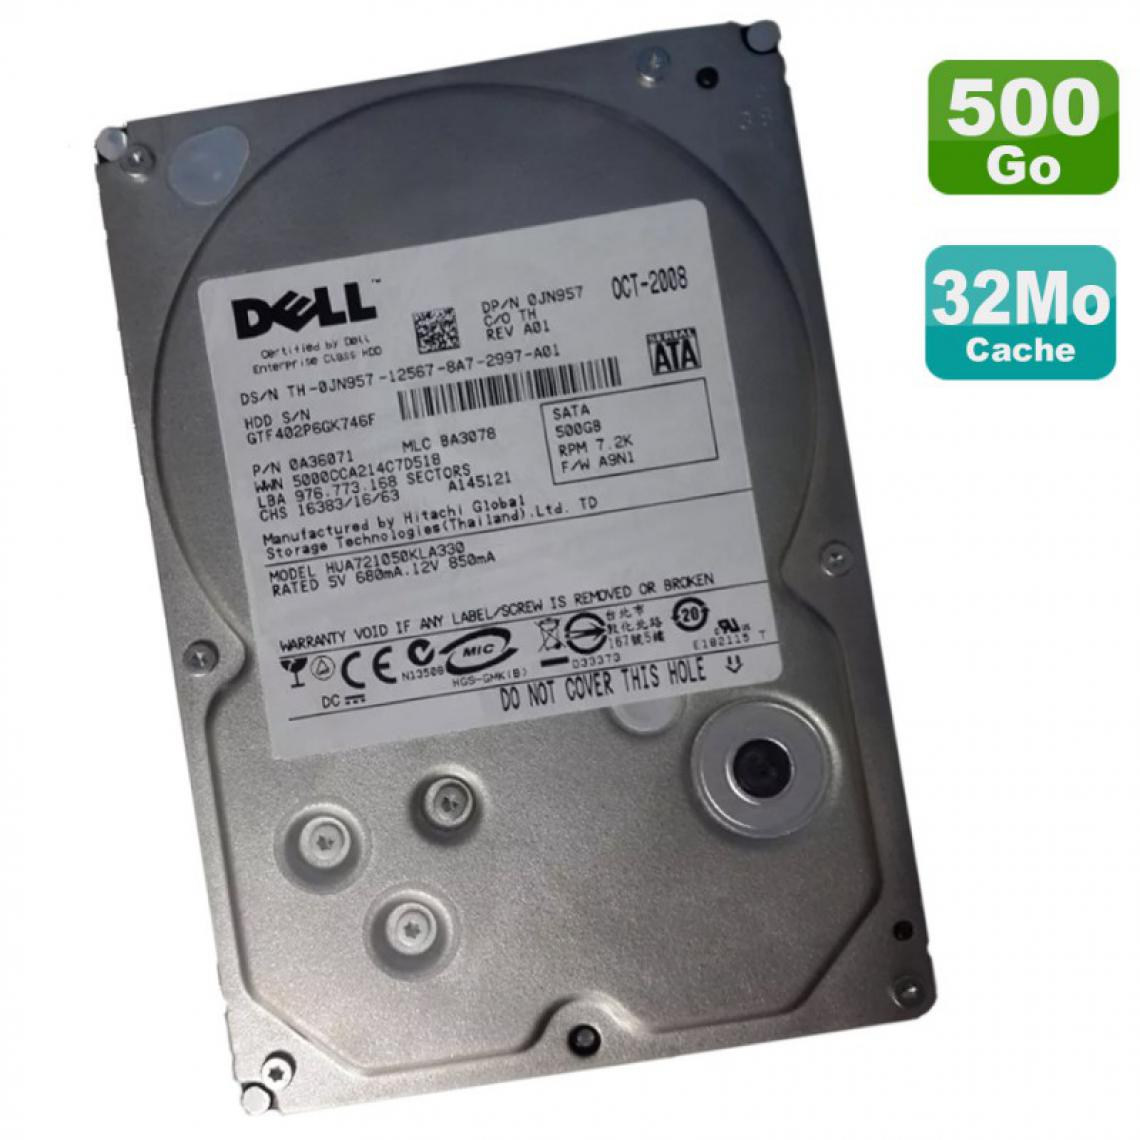 Dell - Disque Dur 500Go 3.5" SATA Dell 0JN957 0A36071 HUA721050KLA330 HITACHI - Disque Dur interne